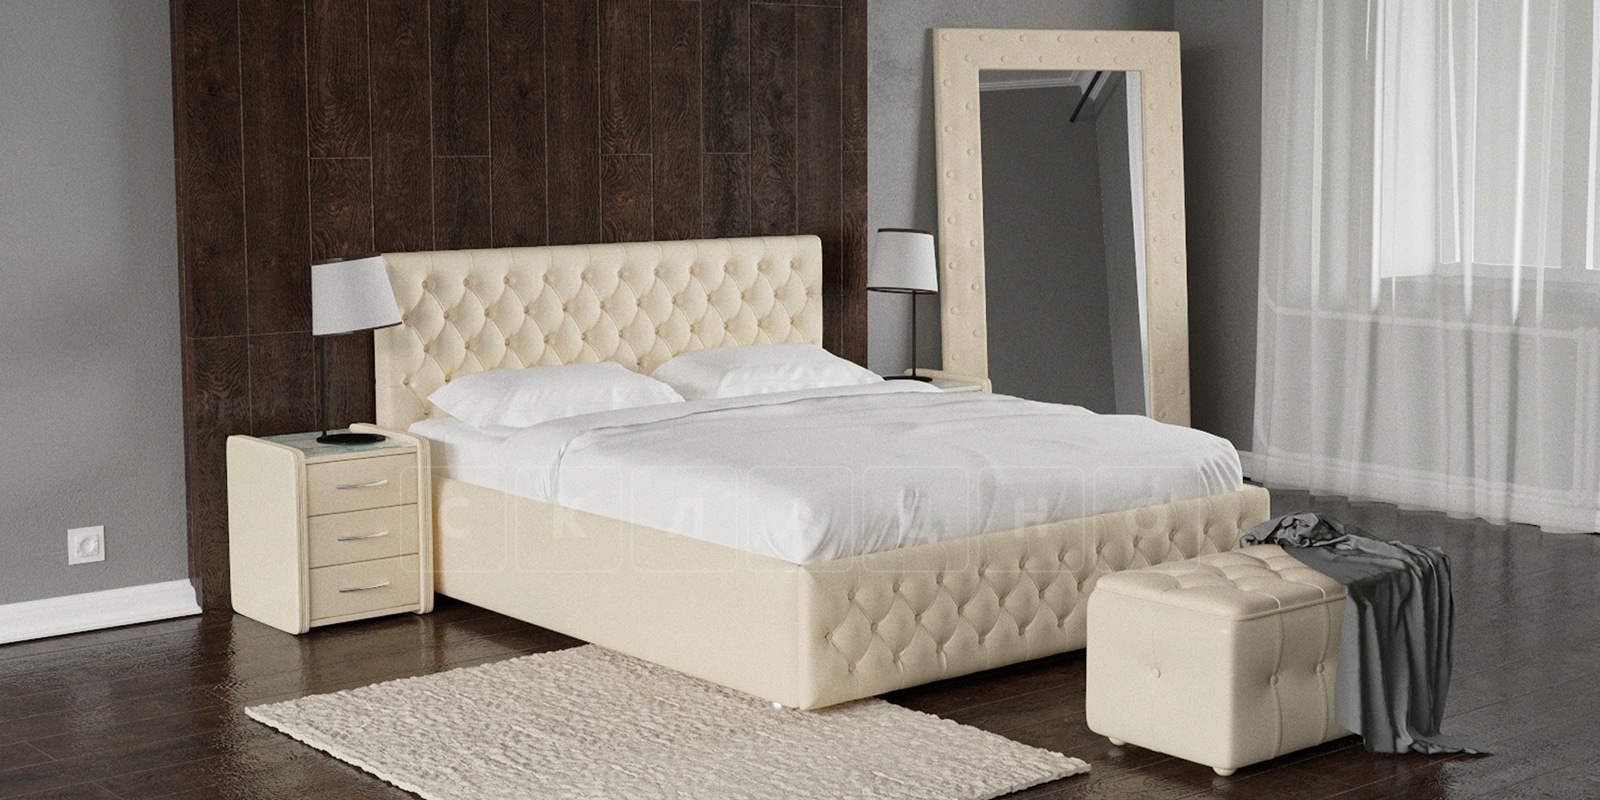 Мягкая кровать Малибу 160 см экокожа бежевого цвета вариант 4-2 фото 1 | интернет-магазин Складно